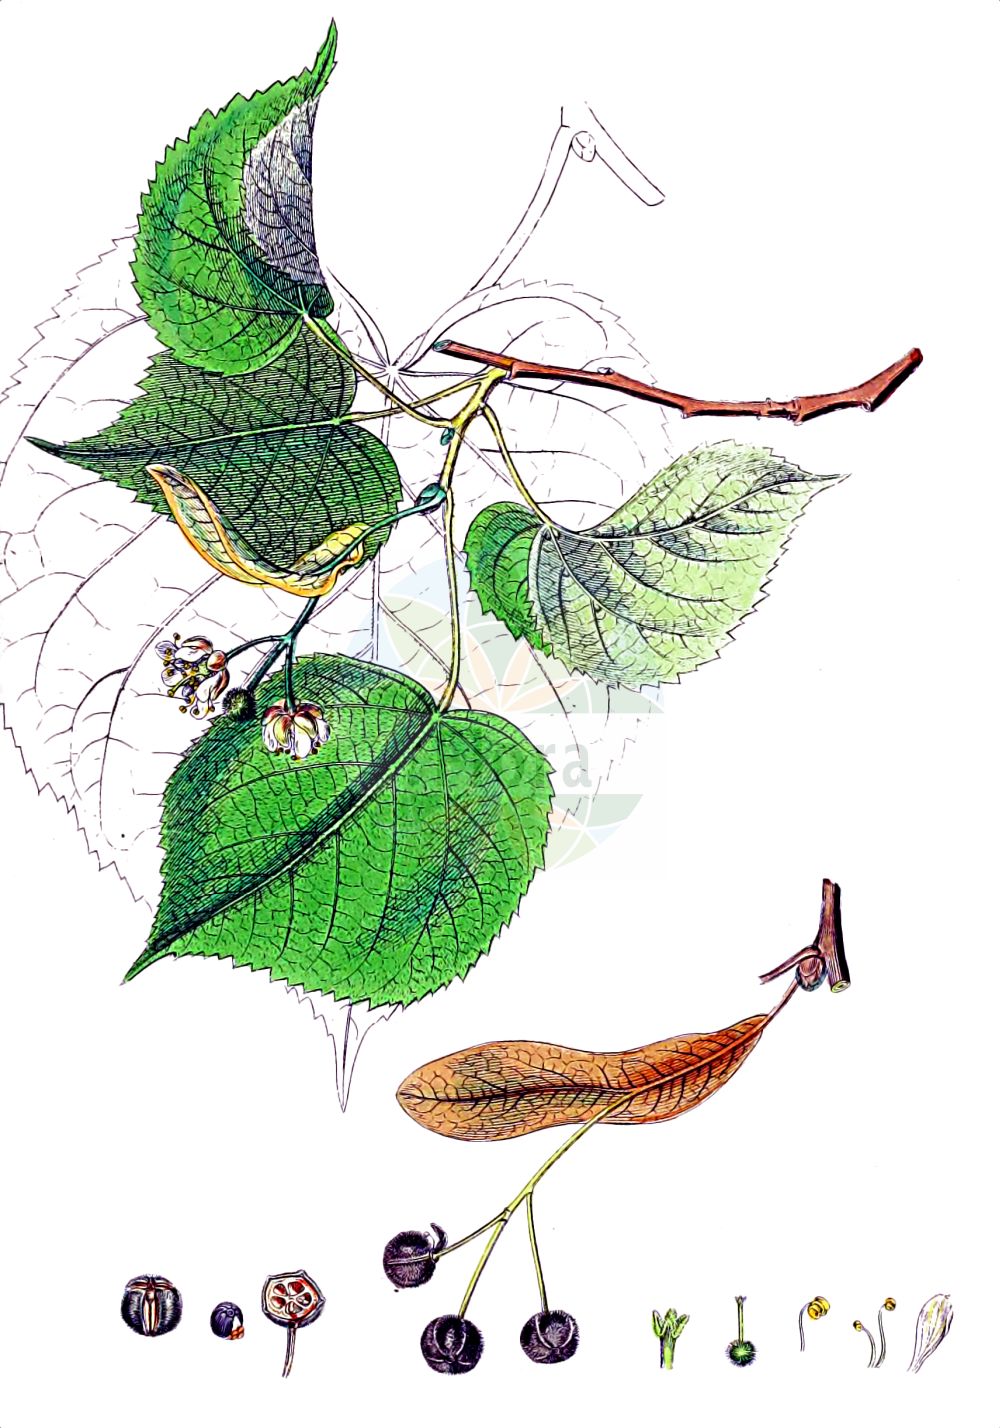 Historische Abbildung von Tilia platyphyllos (Sommer-Linde - Large-leaved Lime). Das Bild zeigt Blatt, Bluete, Frucht und Same. ---- Historical Drawing of Tilia platyphyllos (Sommer-Linde - Large-leaved Lime). The image is showing leaf, flower, fruit and seed.(Tilia platyphyllos,Sommer-Linde,Large-leaved Lime,Tilia braunii,Tilia cordifolia,Tilia corylifolia,Tilia flava,Tilia grandifolia,Tilia platyphyllos,Tilia praecox,Tilia pyramidalis,Tilia rubra,Tilia sitnensis,Sommer-Linde,Frueh-Linde,Gewoehnliche Sommer-Linde,Large-leaved Lime,Broad-leaved Lime,Largeleaf Linden,Large-leaved Linden,Tilia,Linde,Lime,Malvaceae,Malvengewächse,Mallow family,Blatt,Bluete,Frucht,Same,leaf,flower,fruit,seed,Sowerby (1790-1813))